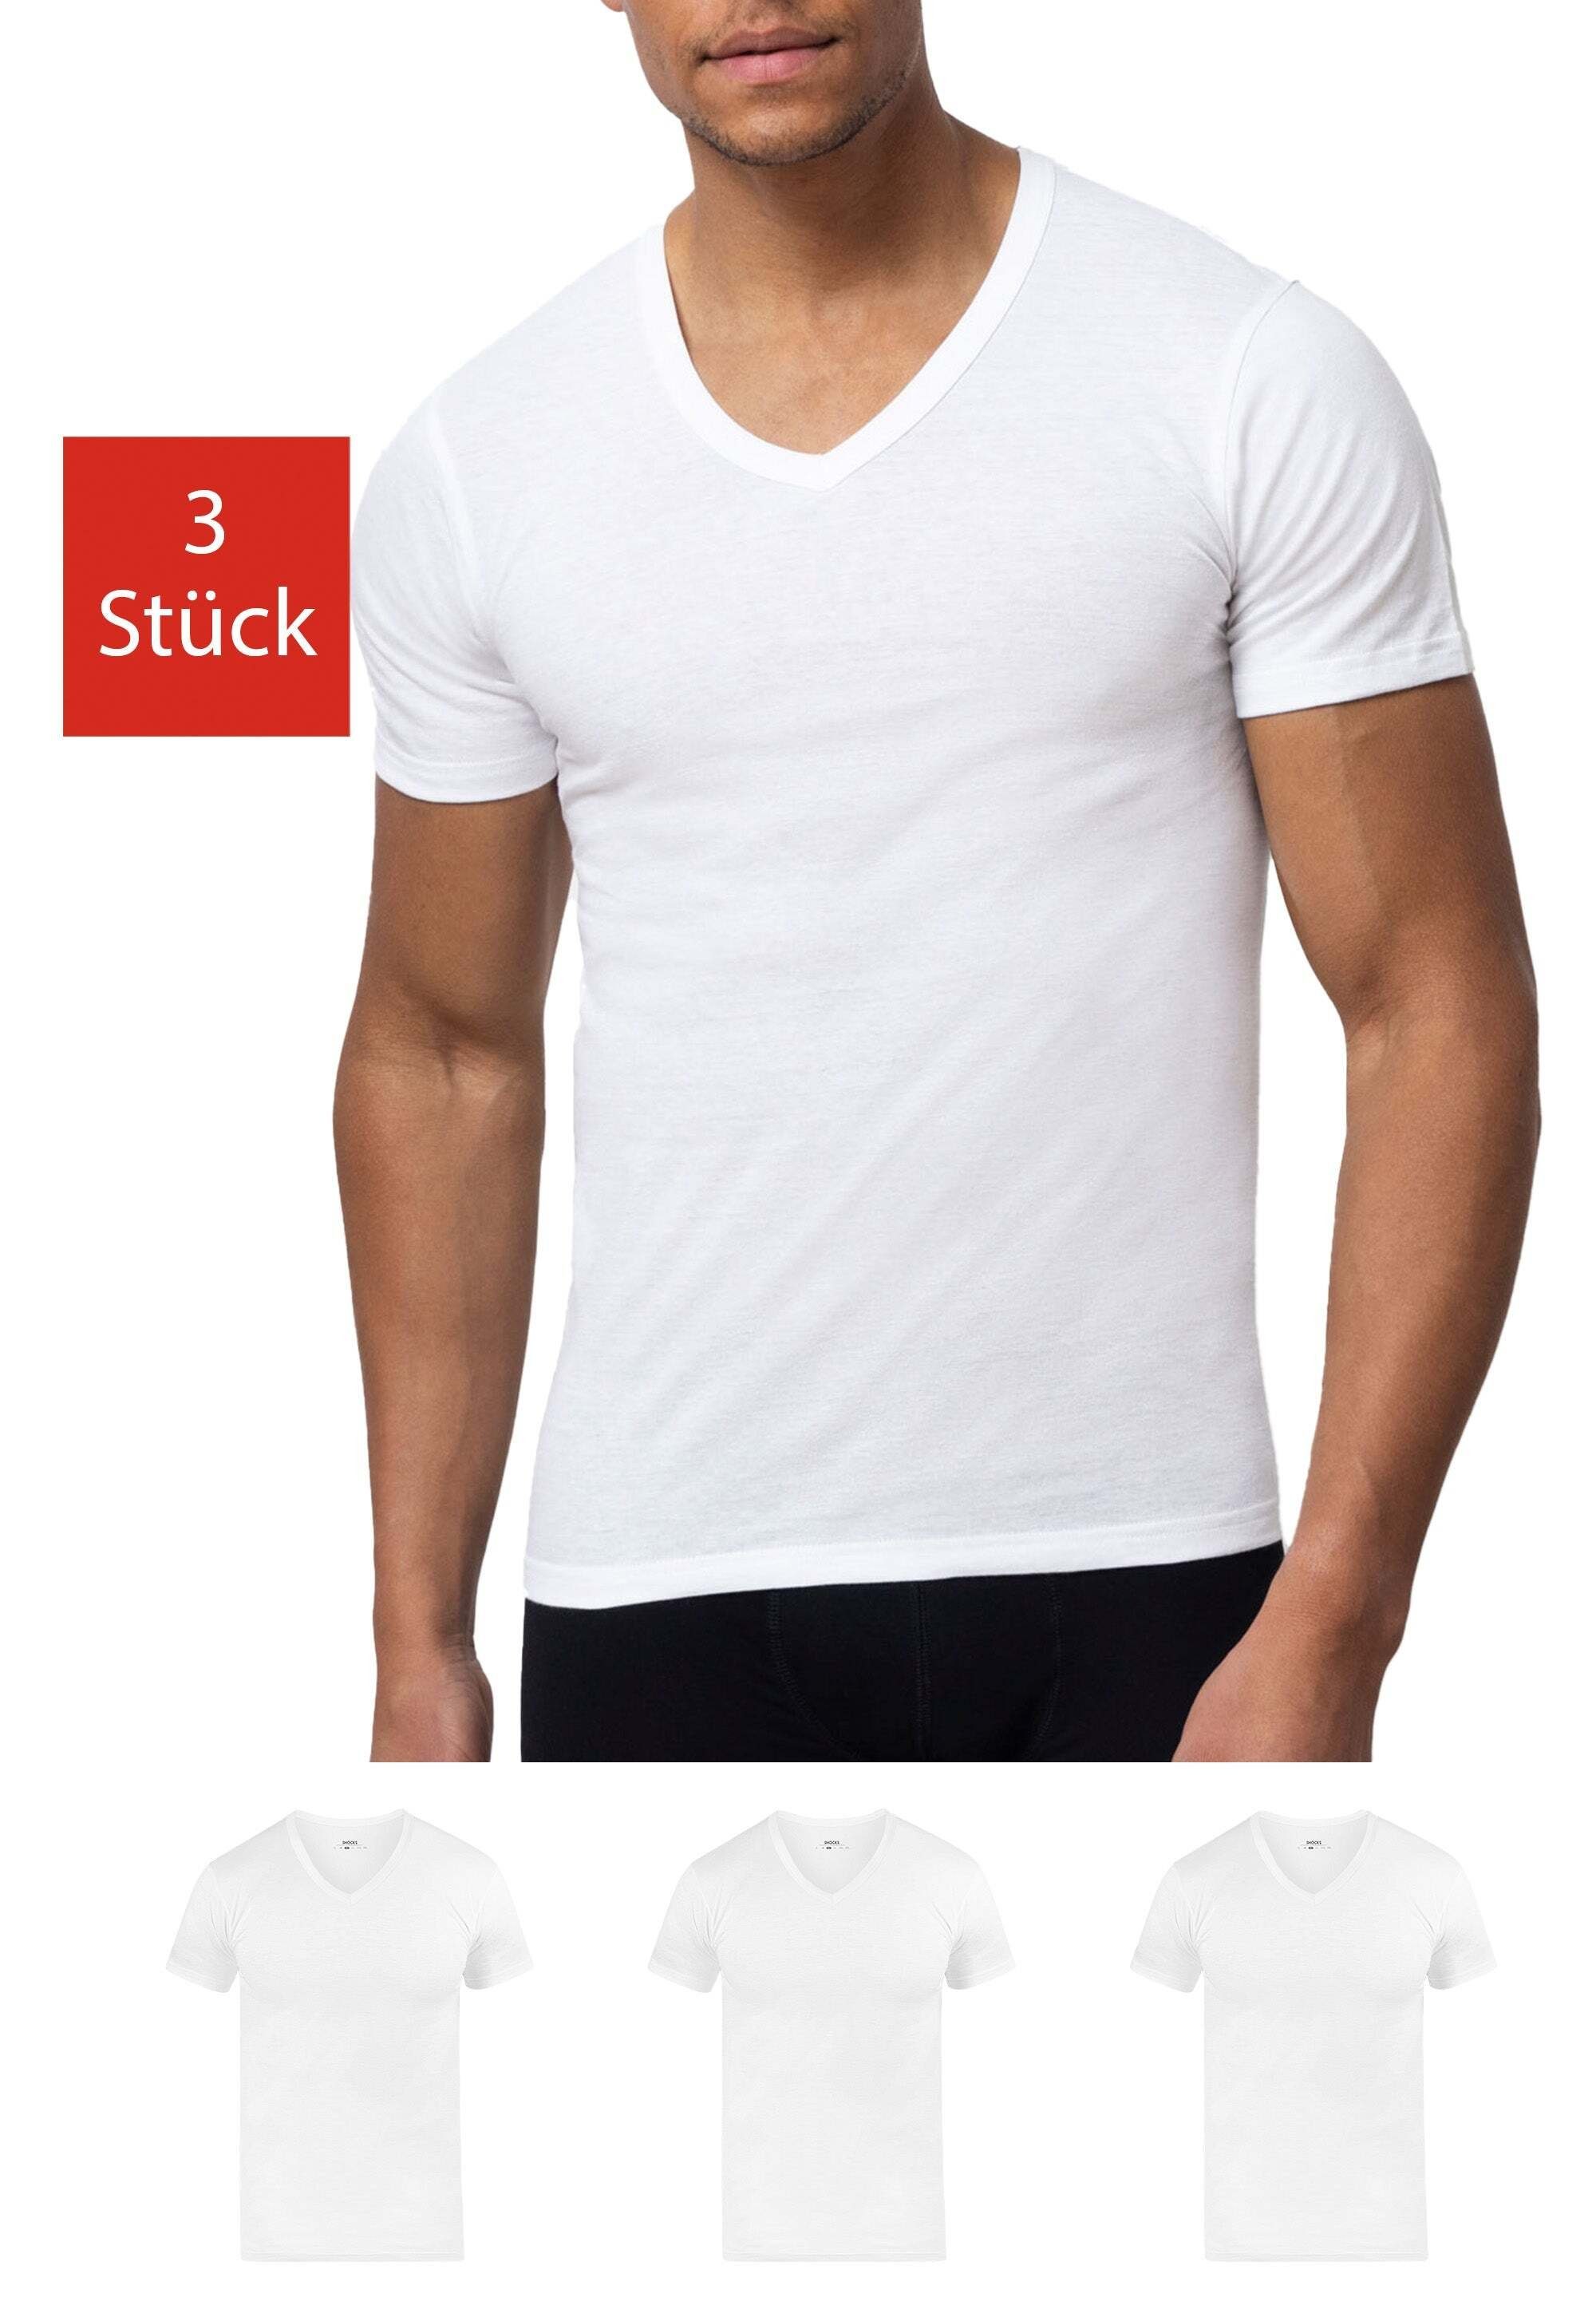 SNOCKS Unterziehshirt T Shirt mit V-Ausschnitt Unterhemden Herren (3 Stück, 3-St) aus Bio-Baumwolle, extra lang geschnitten Weiß | Unterhemden